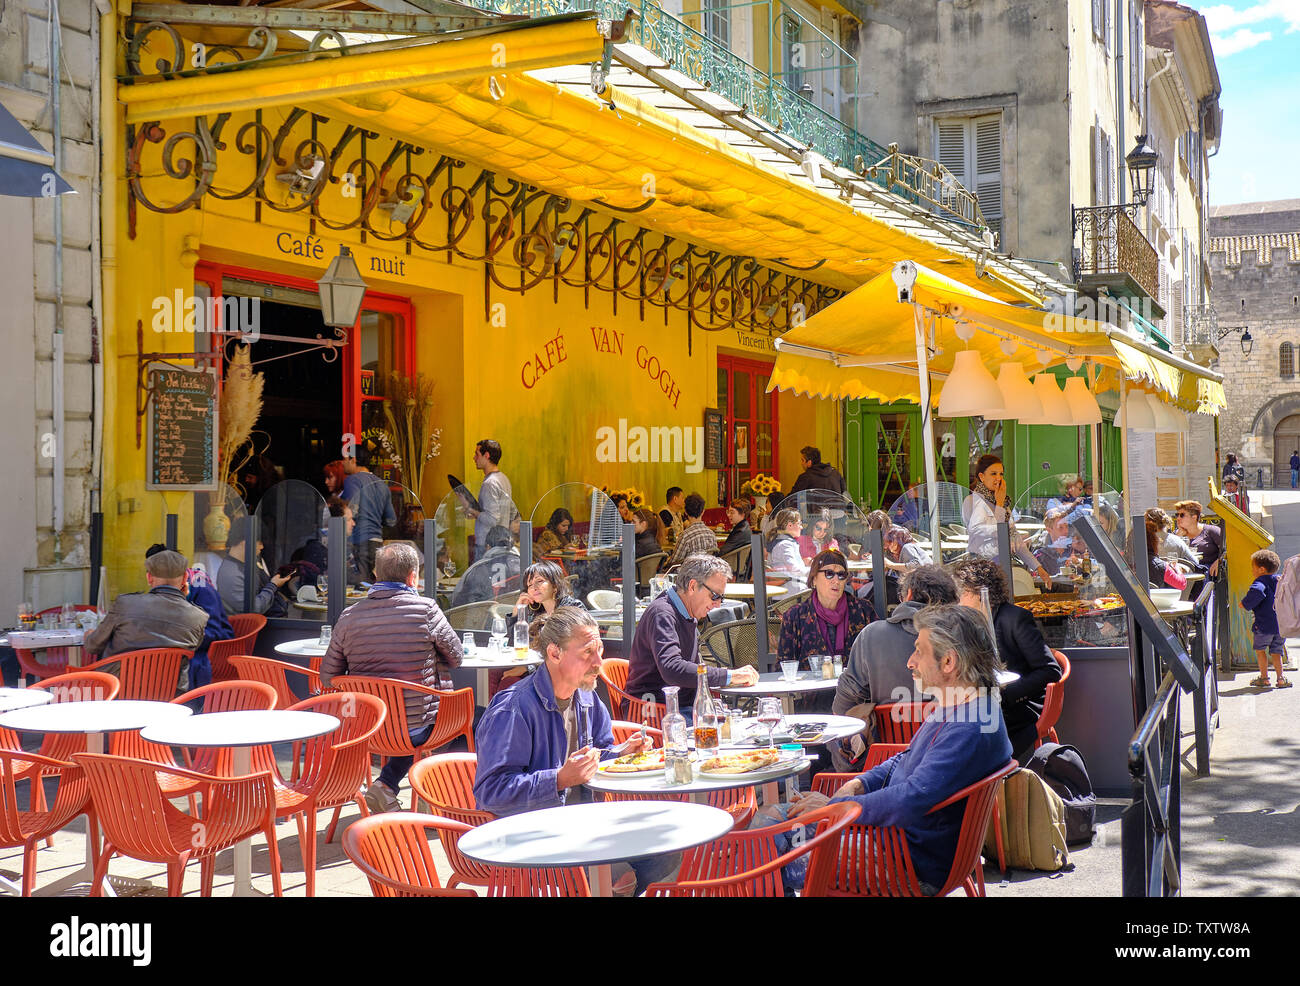 Arles, Frankreich: die Besucher der Stadt Essen und Trinken im Café La Nuit, bekannt durch Vincent Van Gogh Gemälde "Café Terrasse bei Nacht' Stockfoto